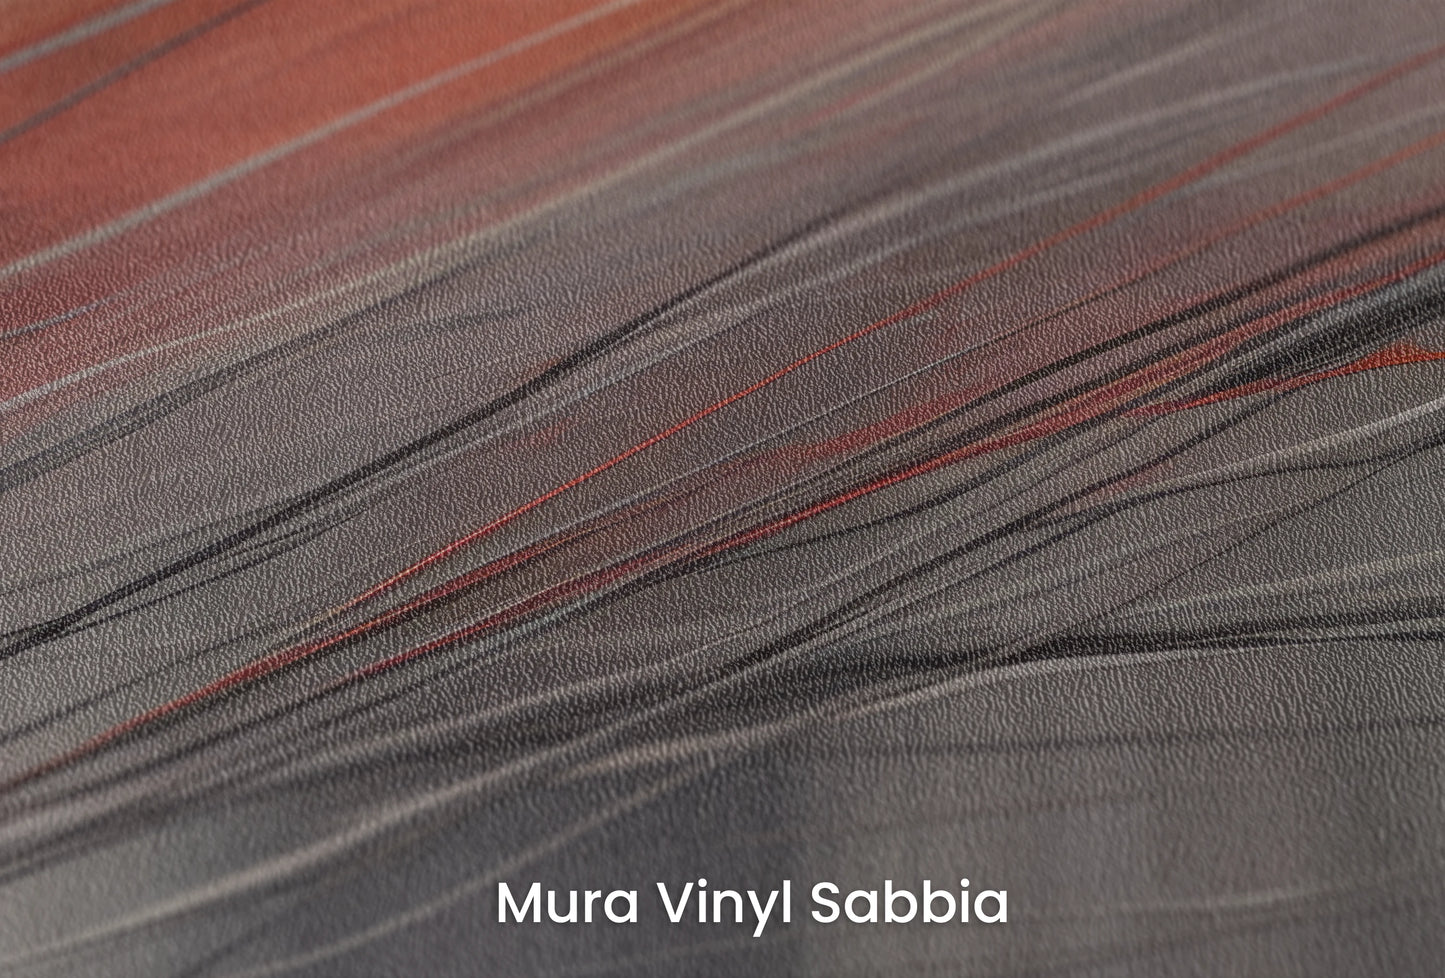 Zbliżenie na artystyczną fototapetę o nazwie Aurora Silk na podłożu Mura Vinyl Sabbia struktura grubego ziarna piasku.